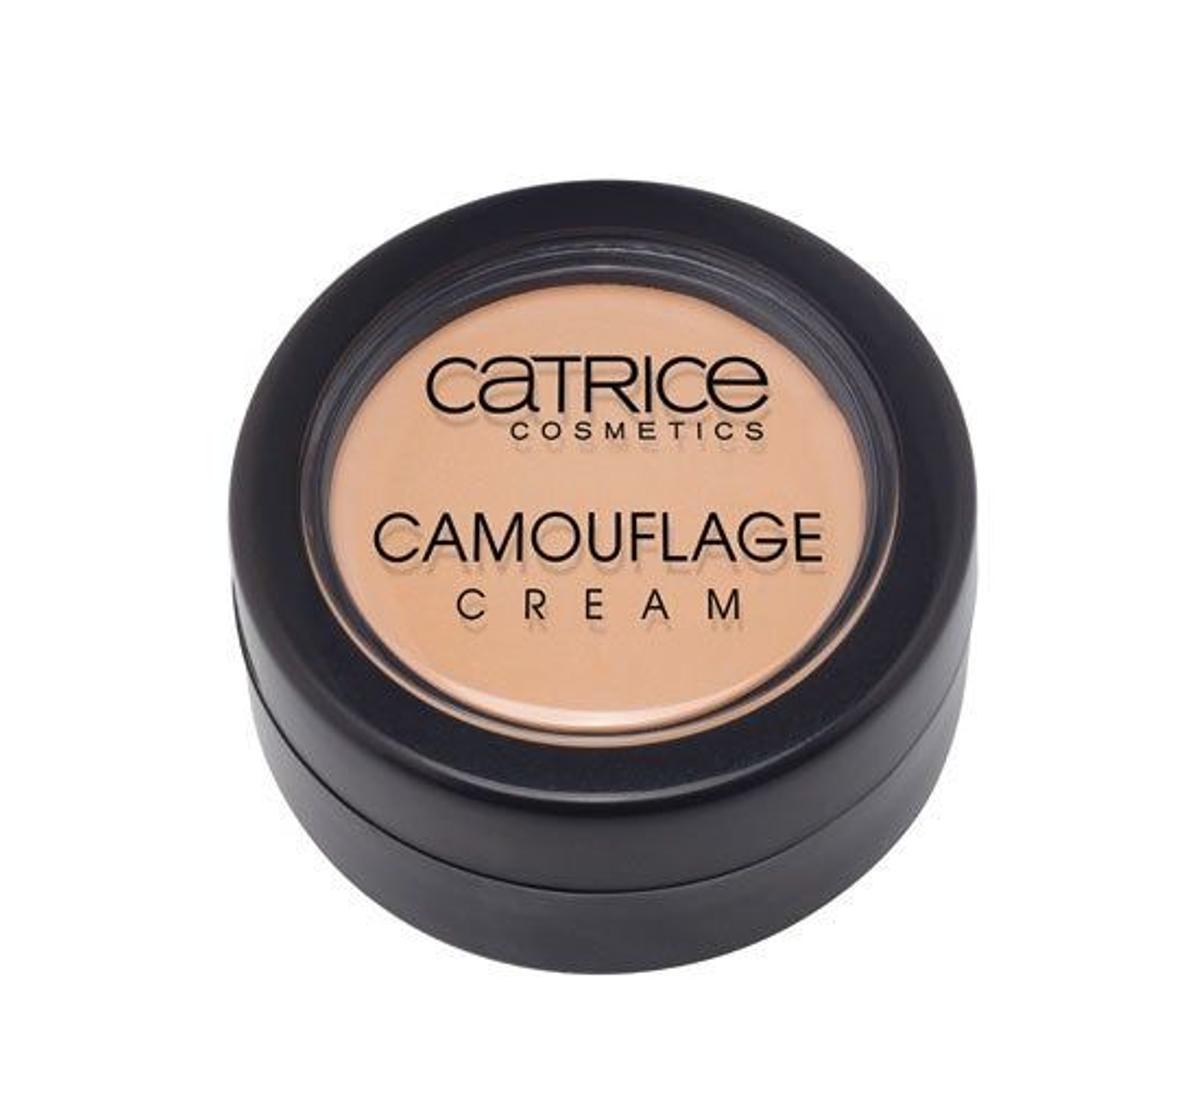 Polvos maquillaje de Catrice, 3,49€